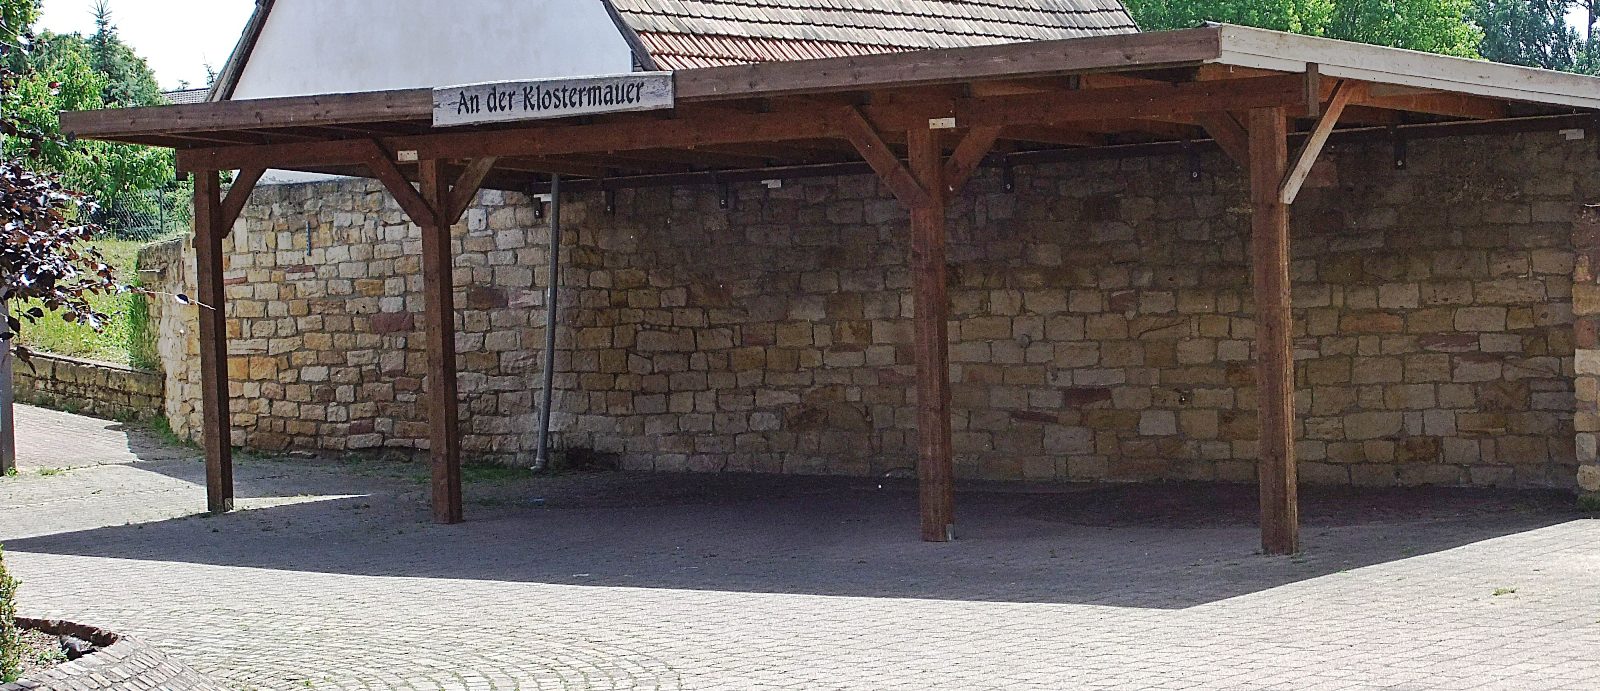 An der Klostermauer Hördt